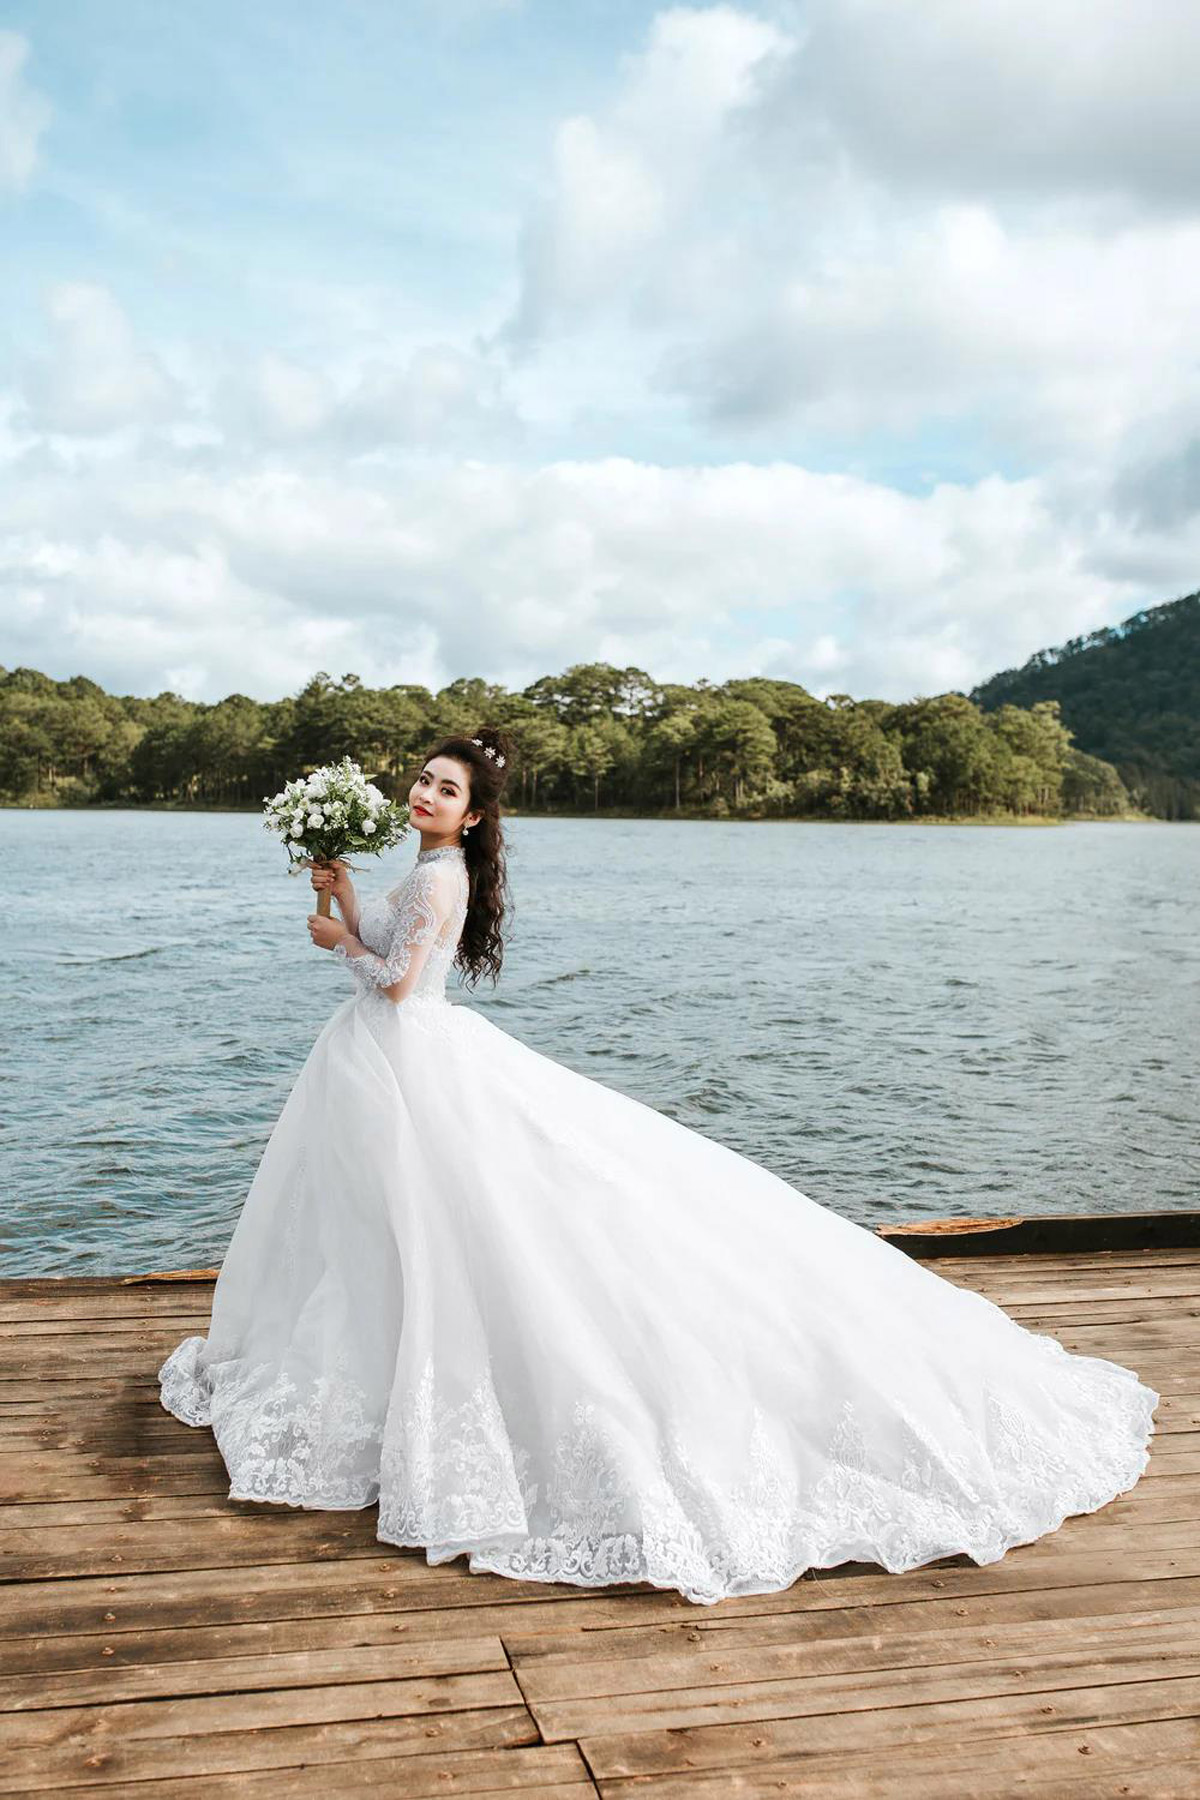 Stunning Yet Functional: Choosing An Ideal Wedding Dress